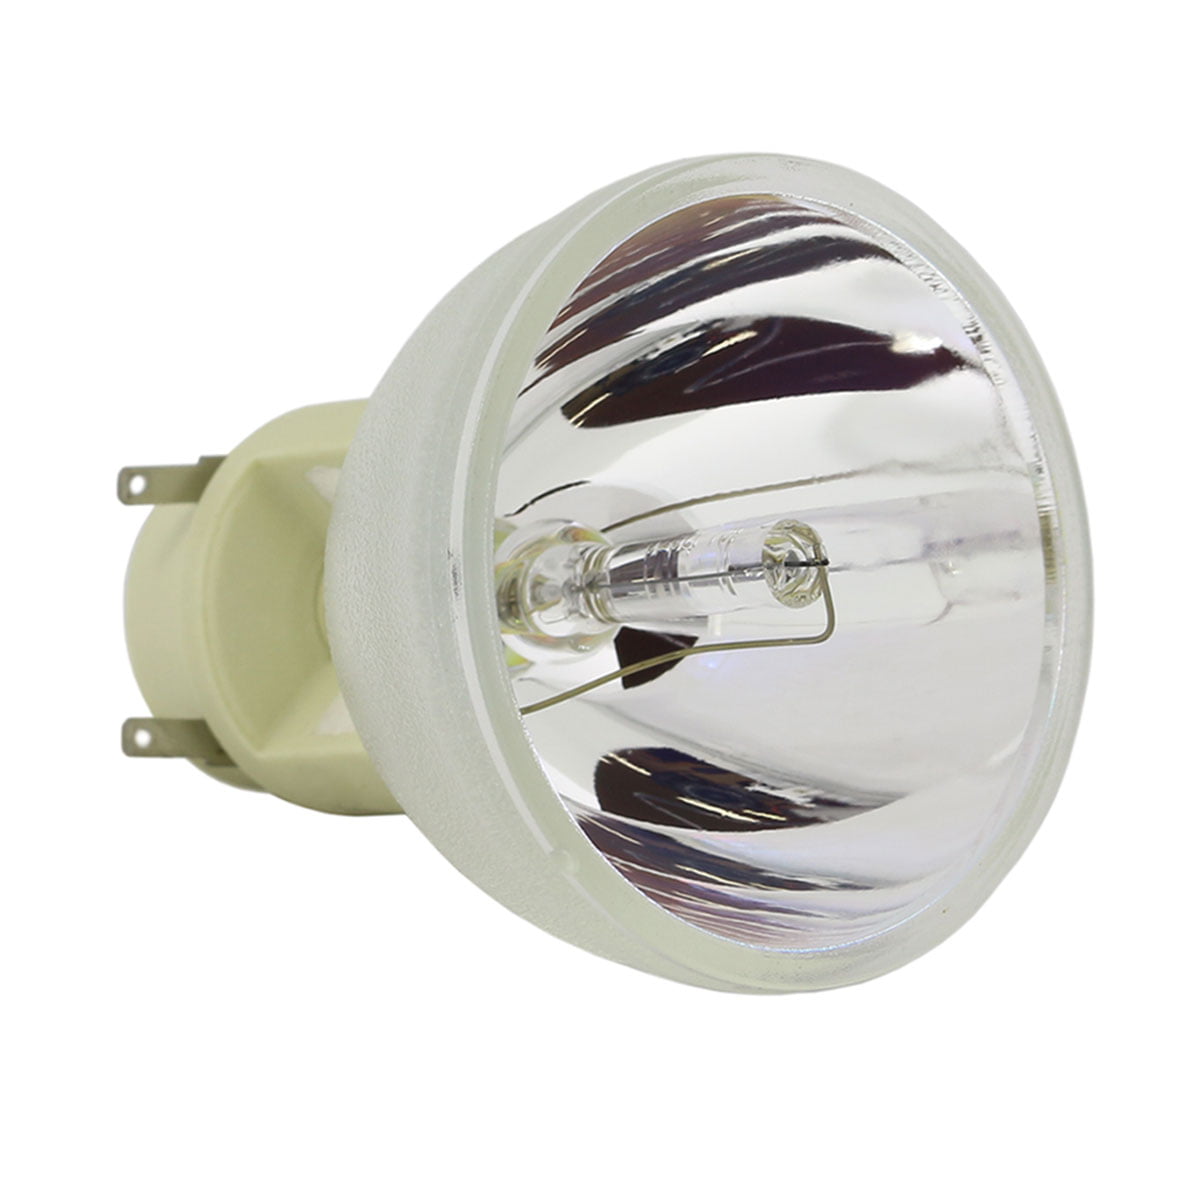 NEW ORIGINAL PROJECTOR LAMP BULB FOR OSRAM P-VIP 240/0.8 E20.8 240/ 0.8 E20.8 